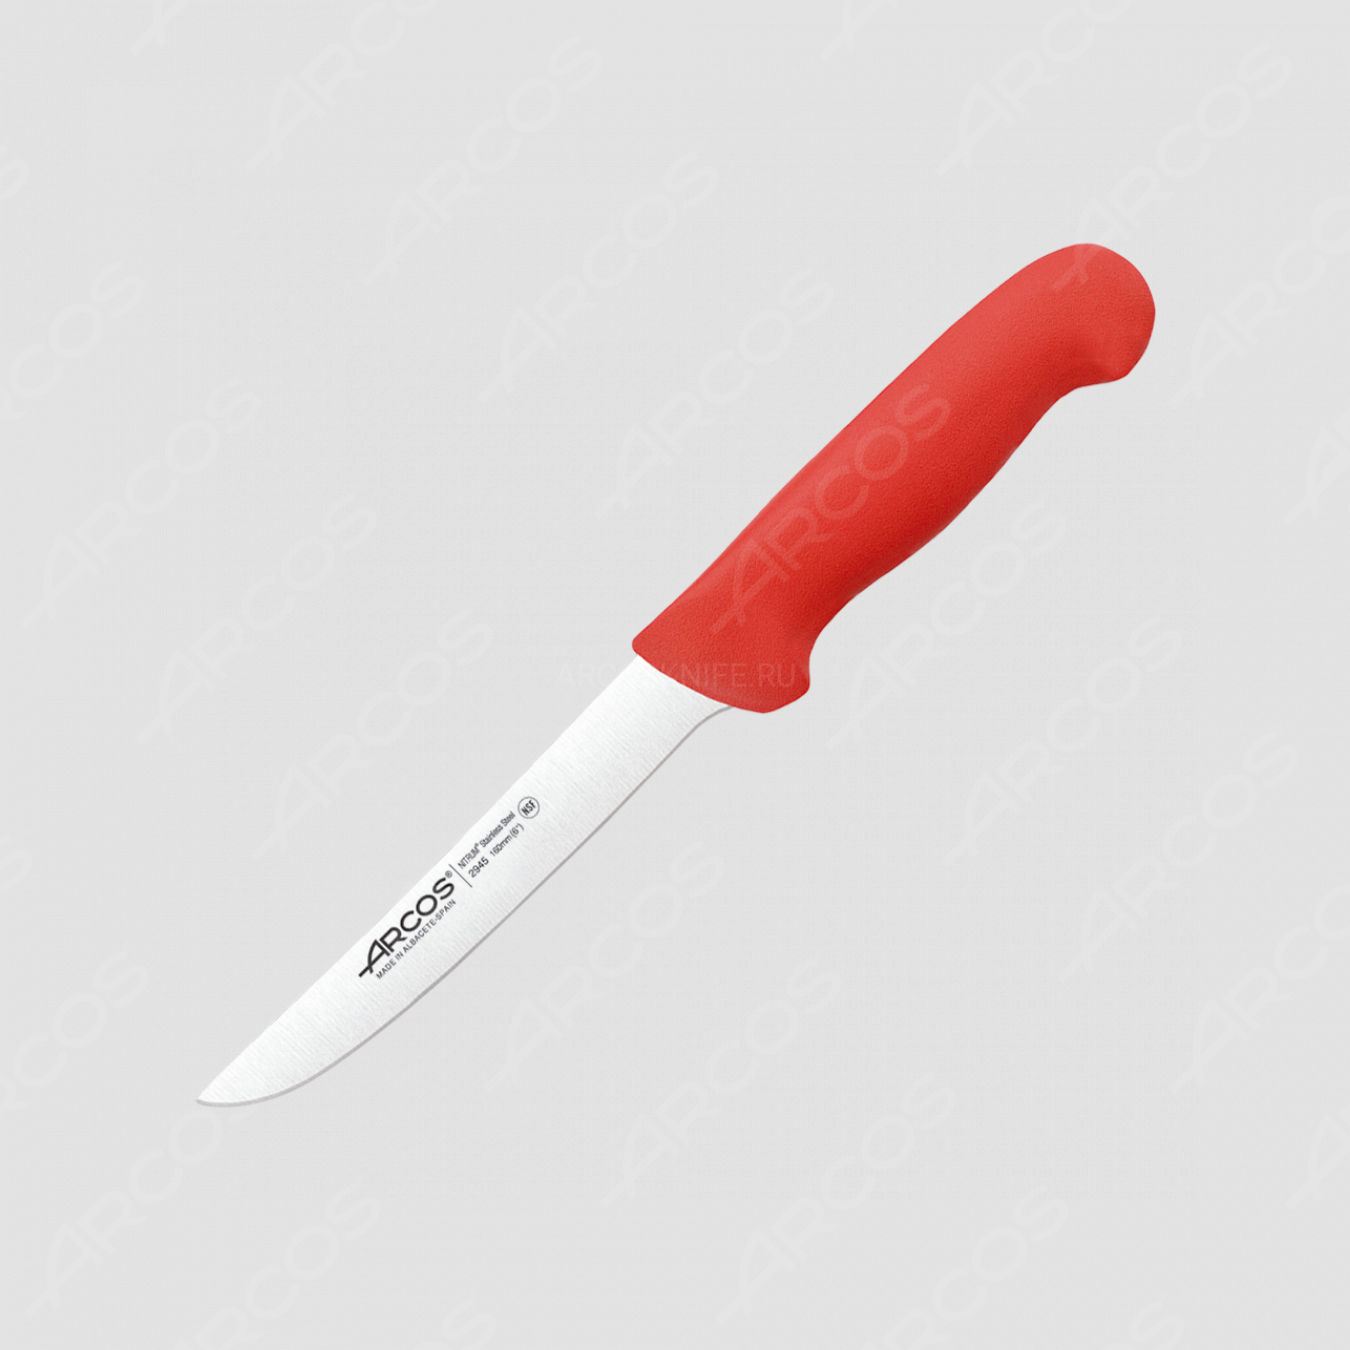 Нож кухонный обвалочный 16 см, рукоять - красная, серия 2900, ARCOS, Испания